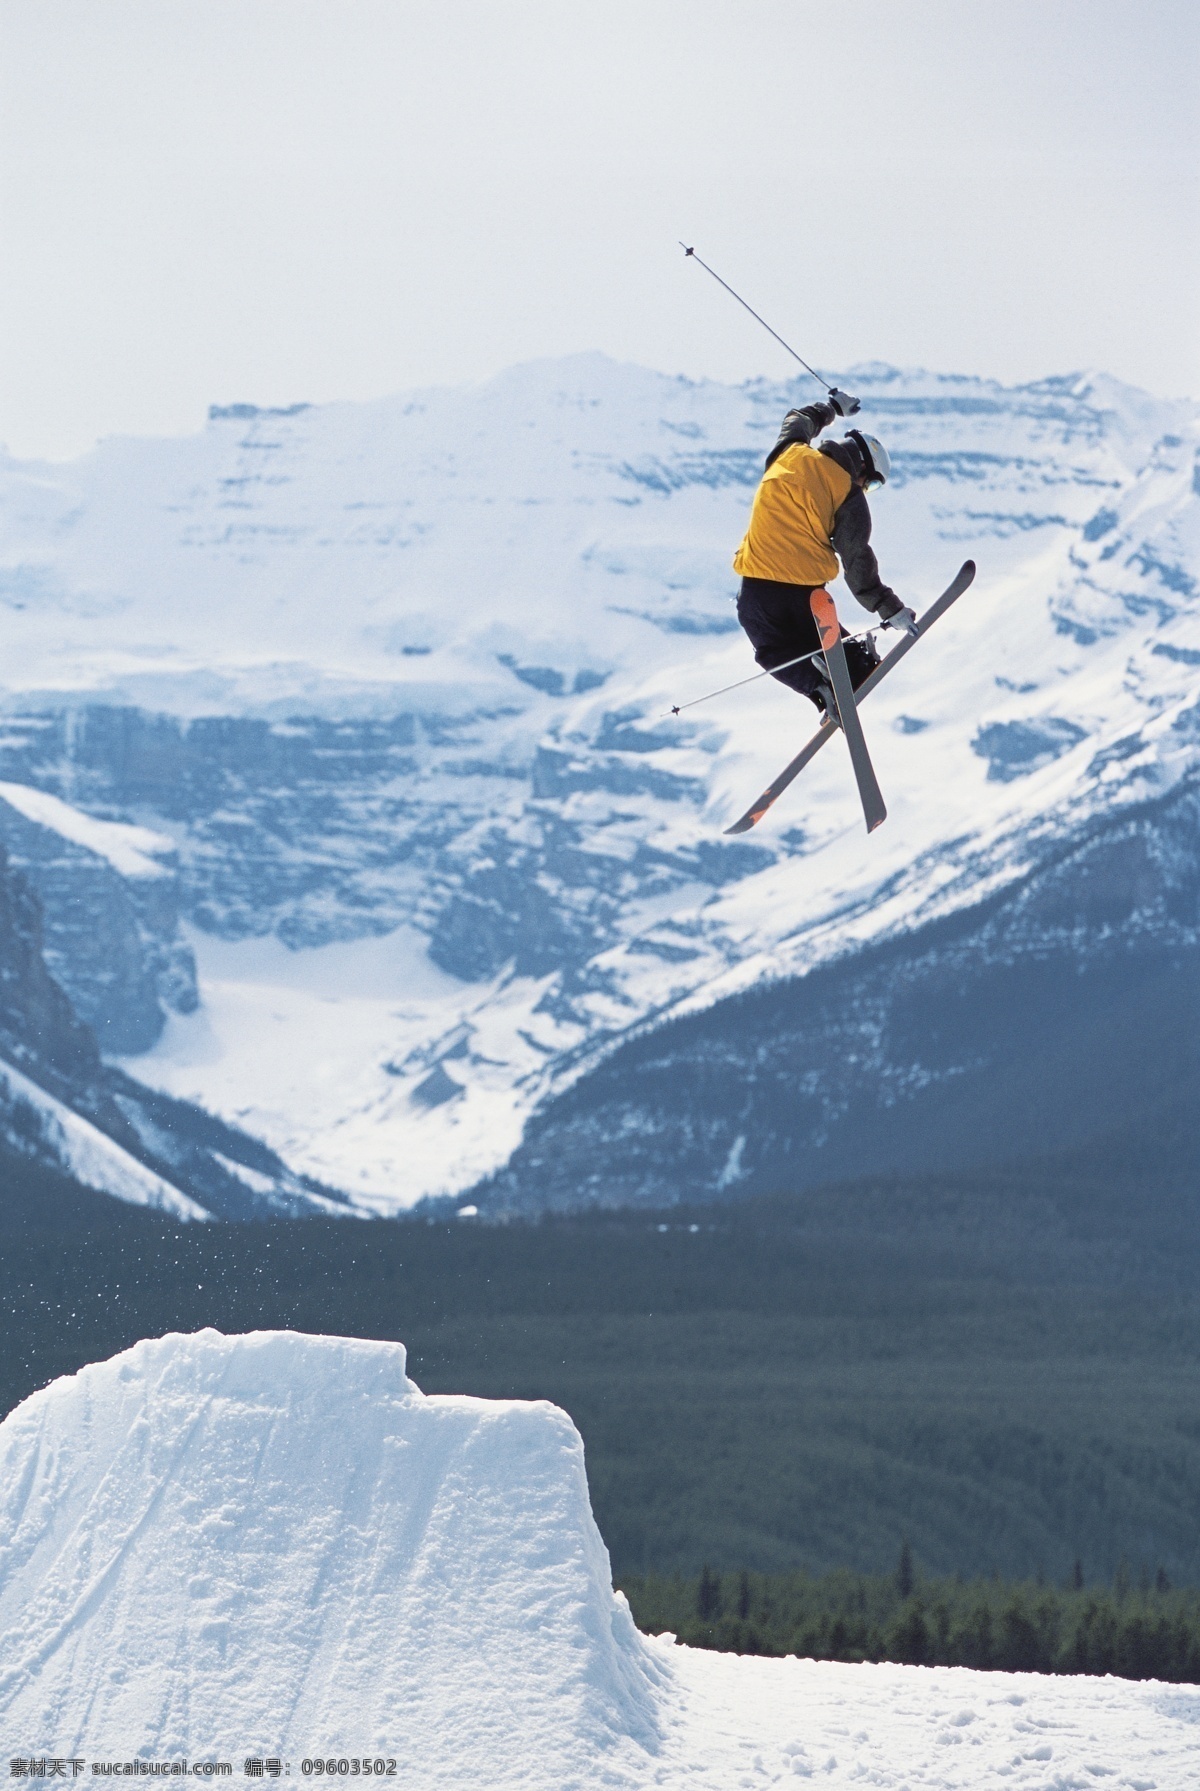 双板 滑雪 飞起 瞬间 高山滑雪 越野滑雪 双板滑雪 生活百科 摄影图片 体育运动 白色